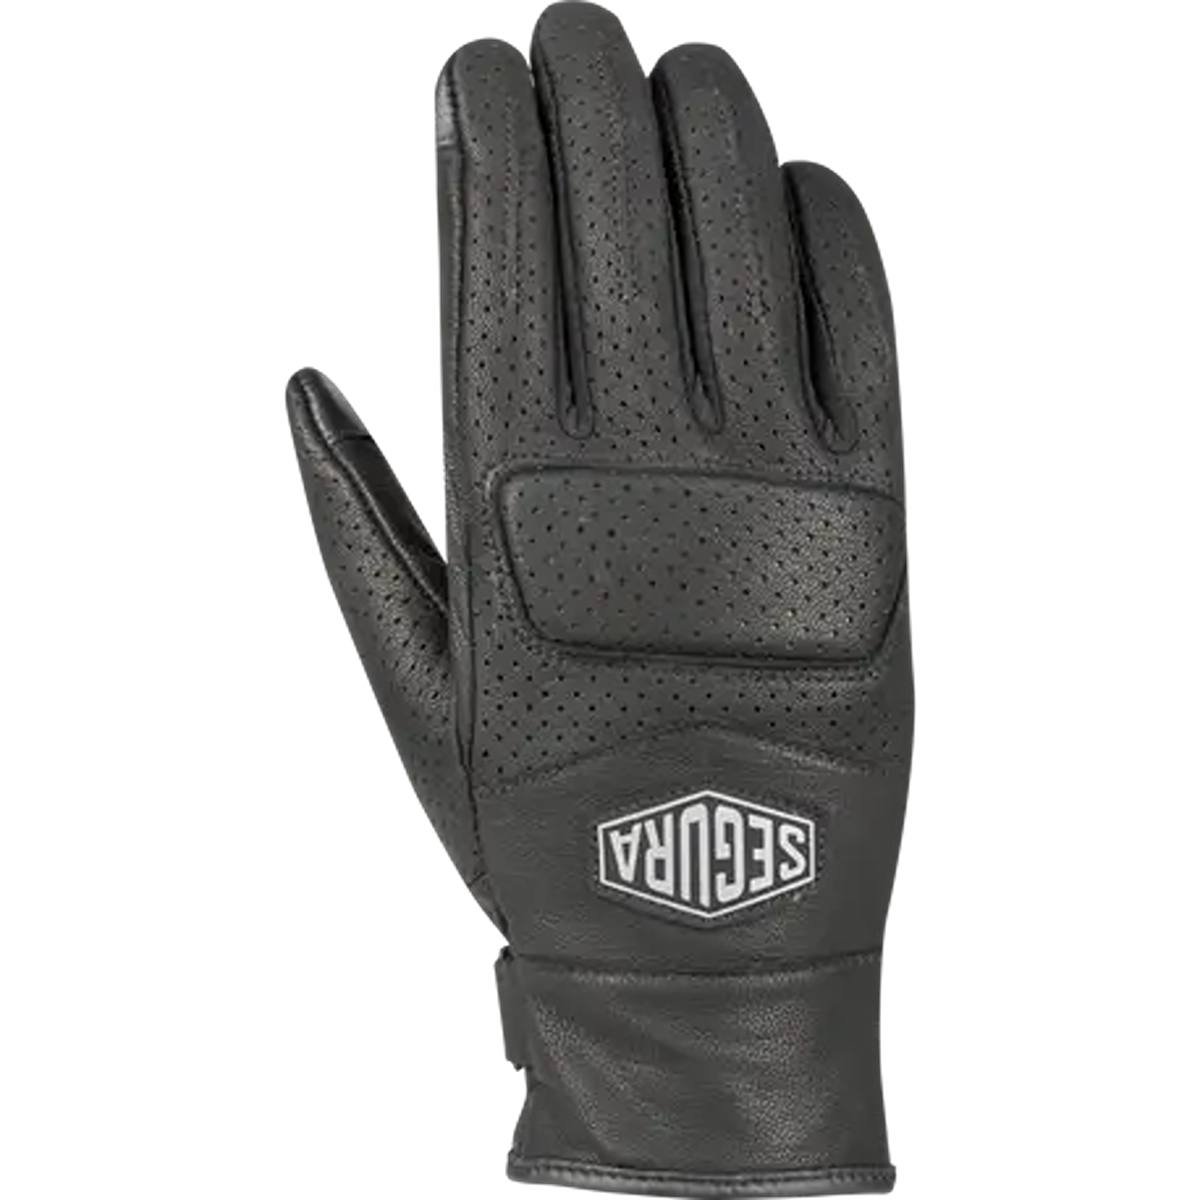 Image of Segura Lady Bogart Gloves Black Size T7 EN